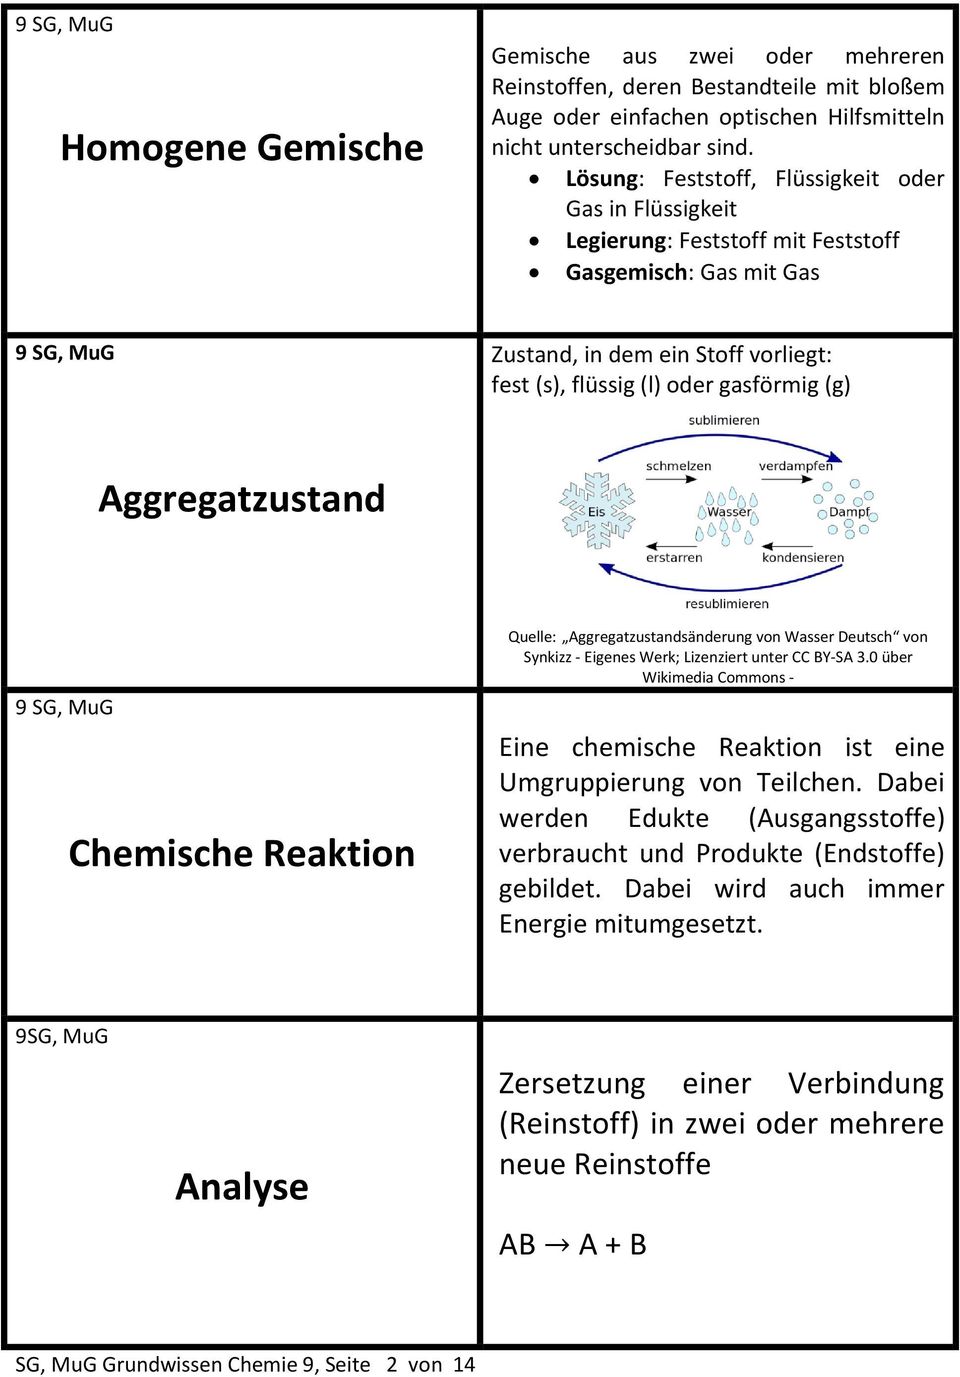 Aggregatzustand Chemische Reaktion Quelle: Aggregatzustandsänderung von Wasser Deutsch von Synkizz - Eigenes Werk; Lizenziert unter CC BY-SA 3.